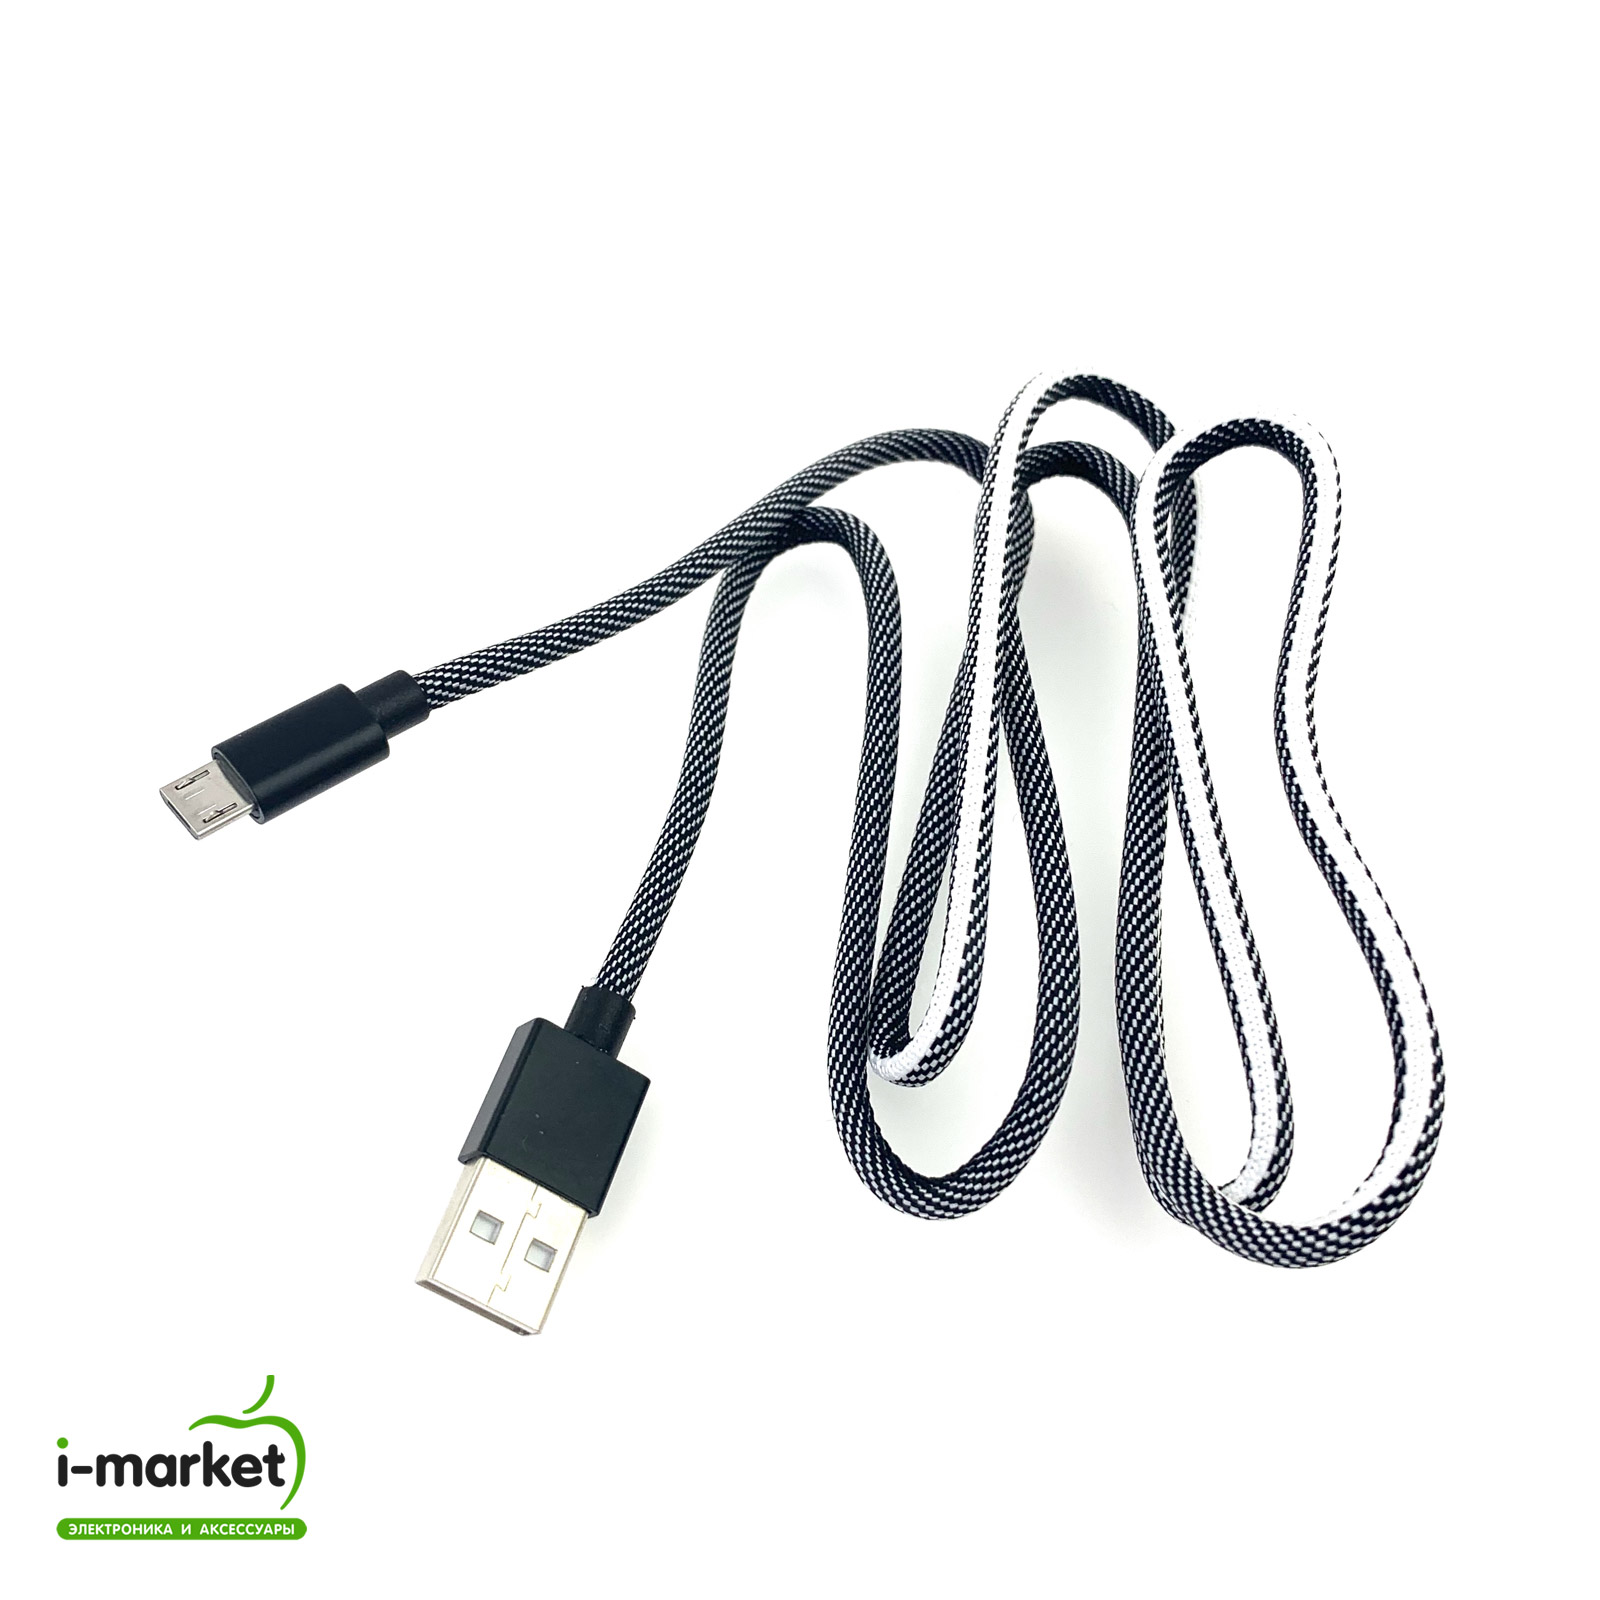 USB Дата кабель Micro USB, длина 1 метр, тканевое армирование, цвет бело черный